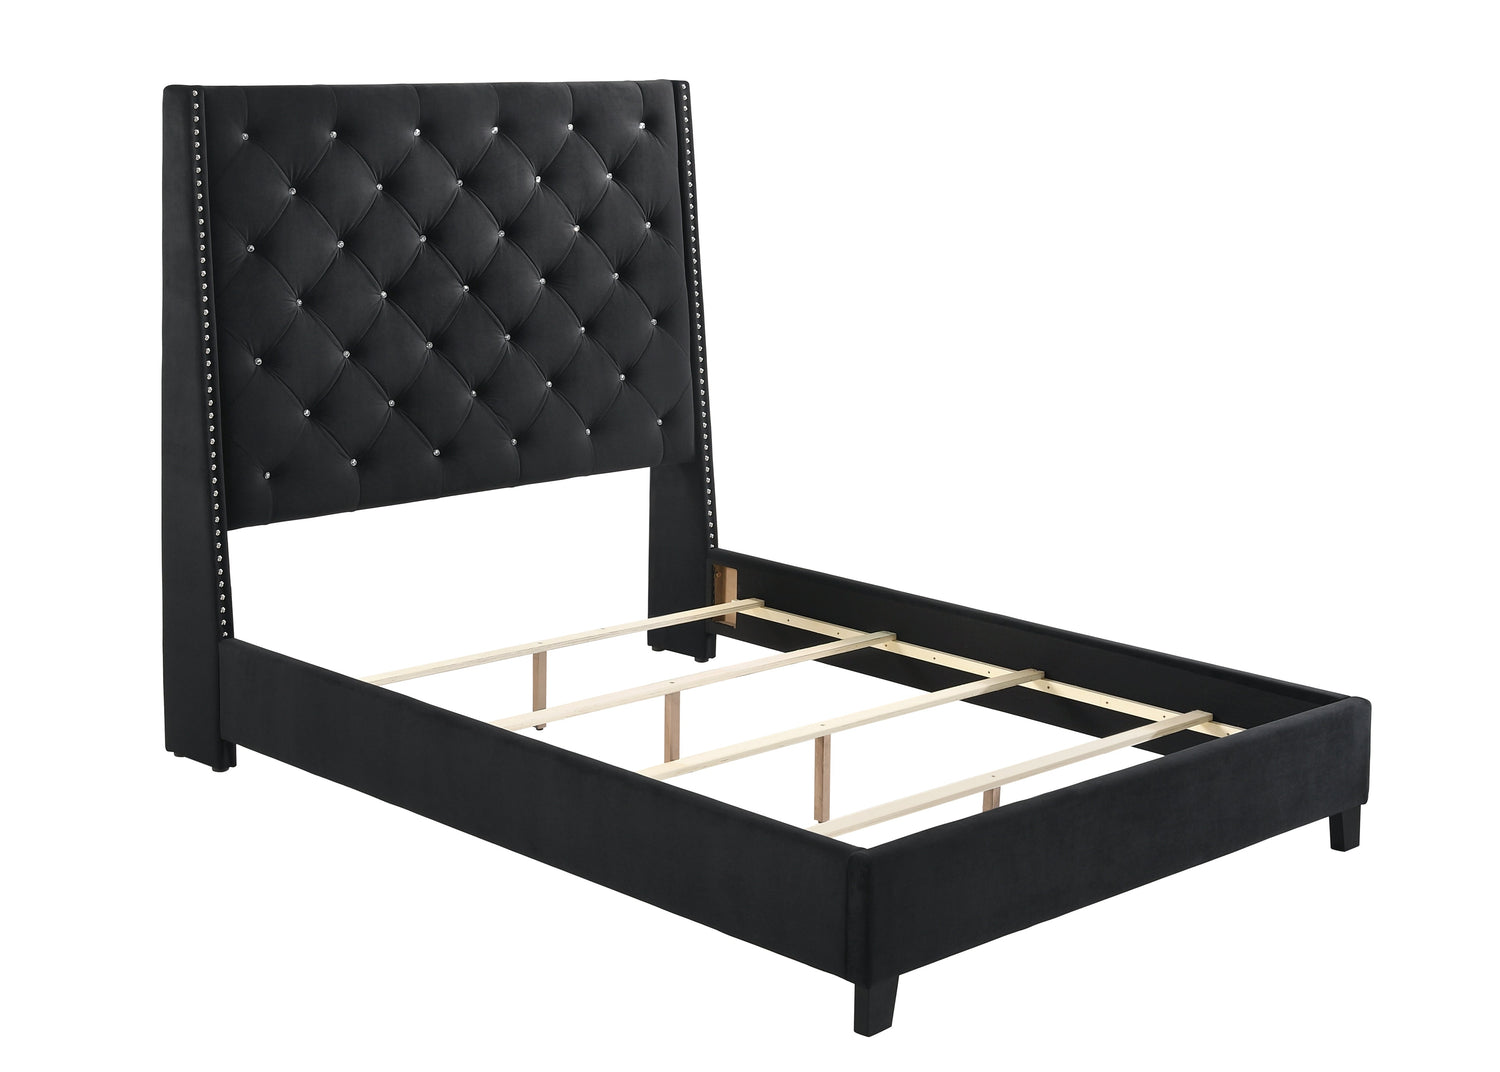 Chantilly Black Velvet King Upholstered Bed - SET | 5265BK-K-HB | 5265BK-K-FRW - Bien Home Furniture &amp; Electronics